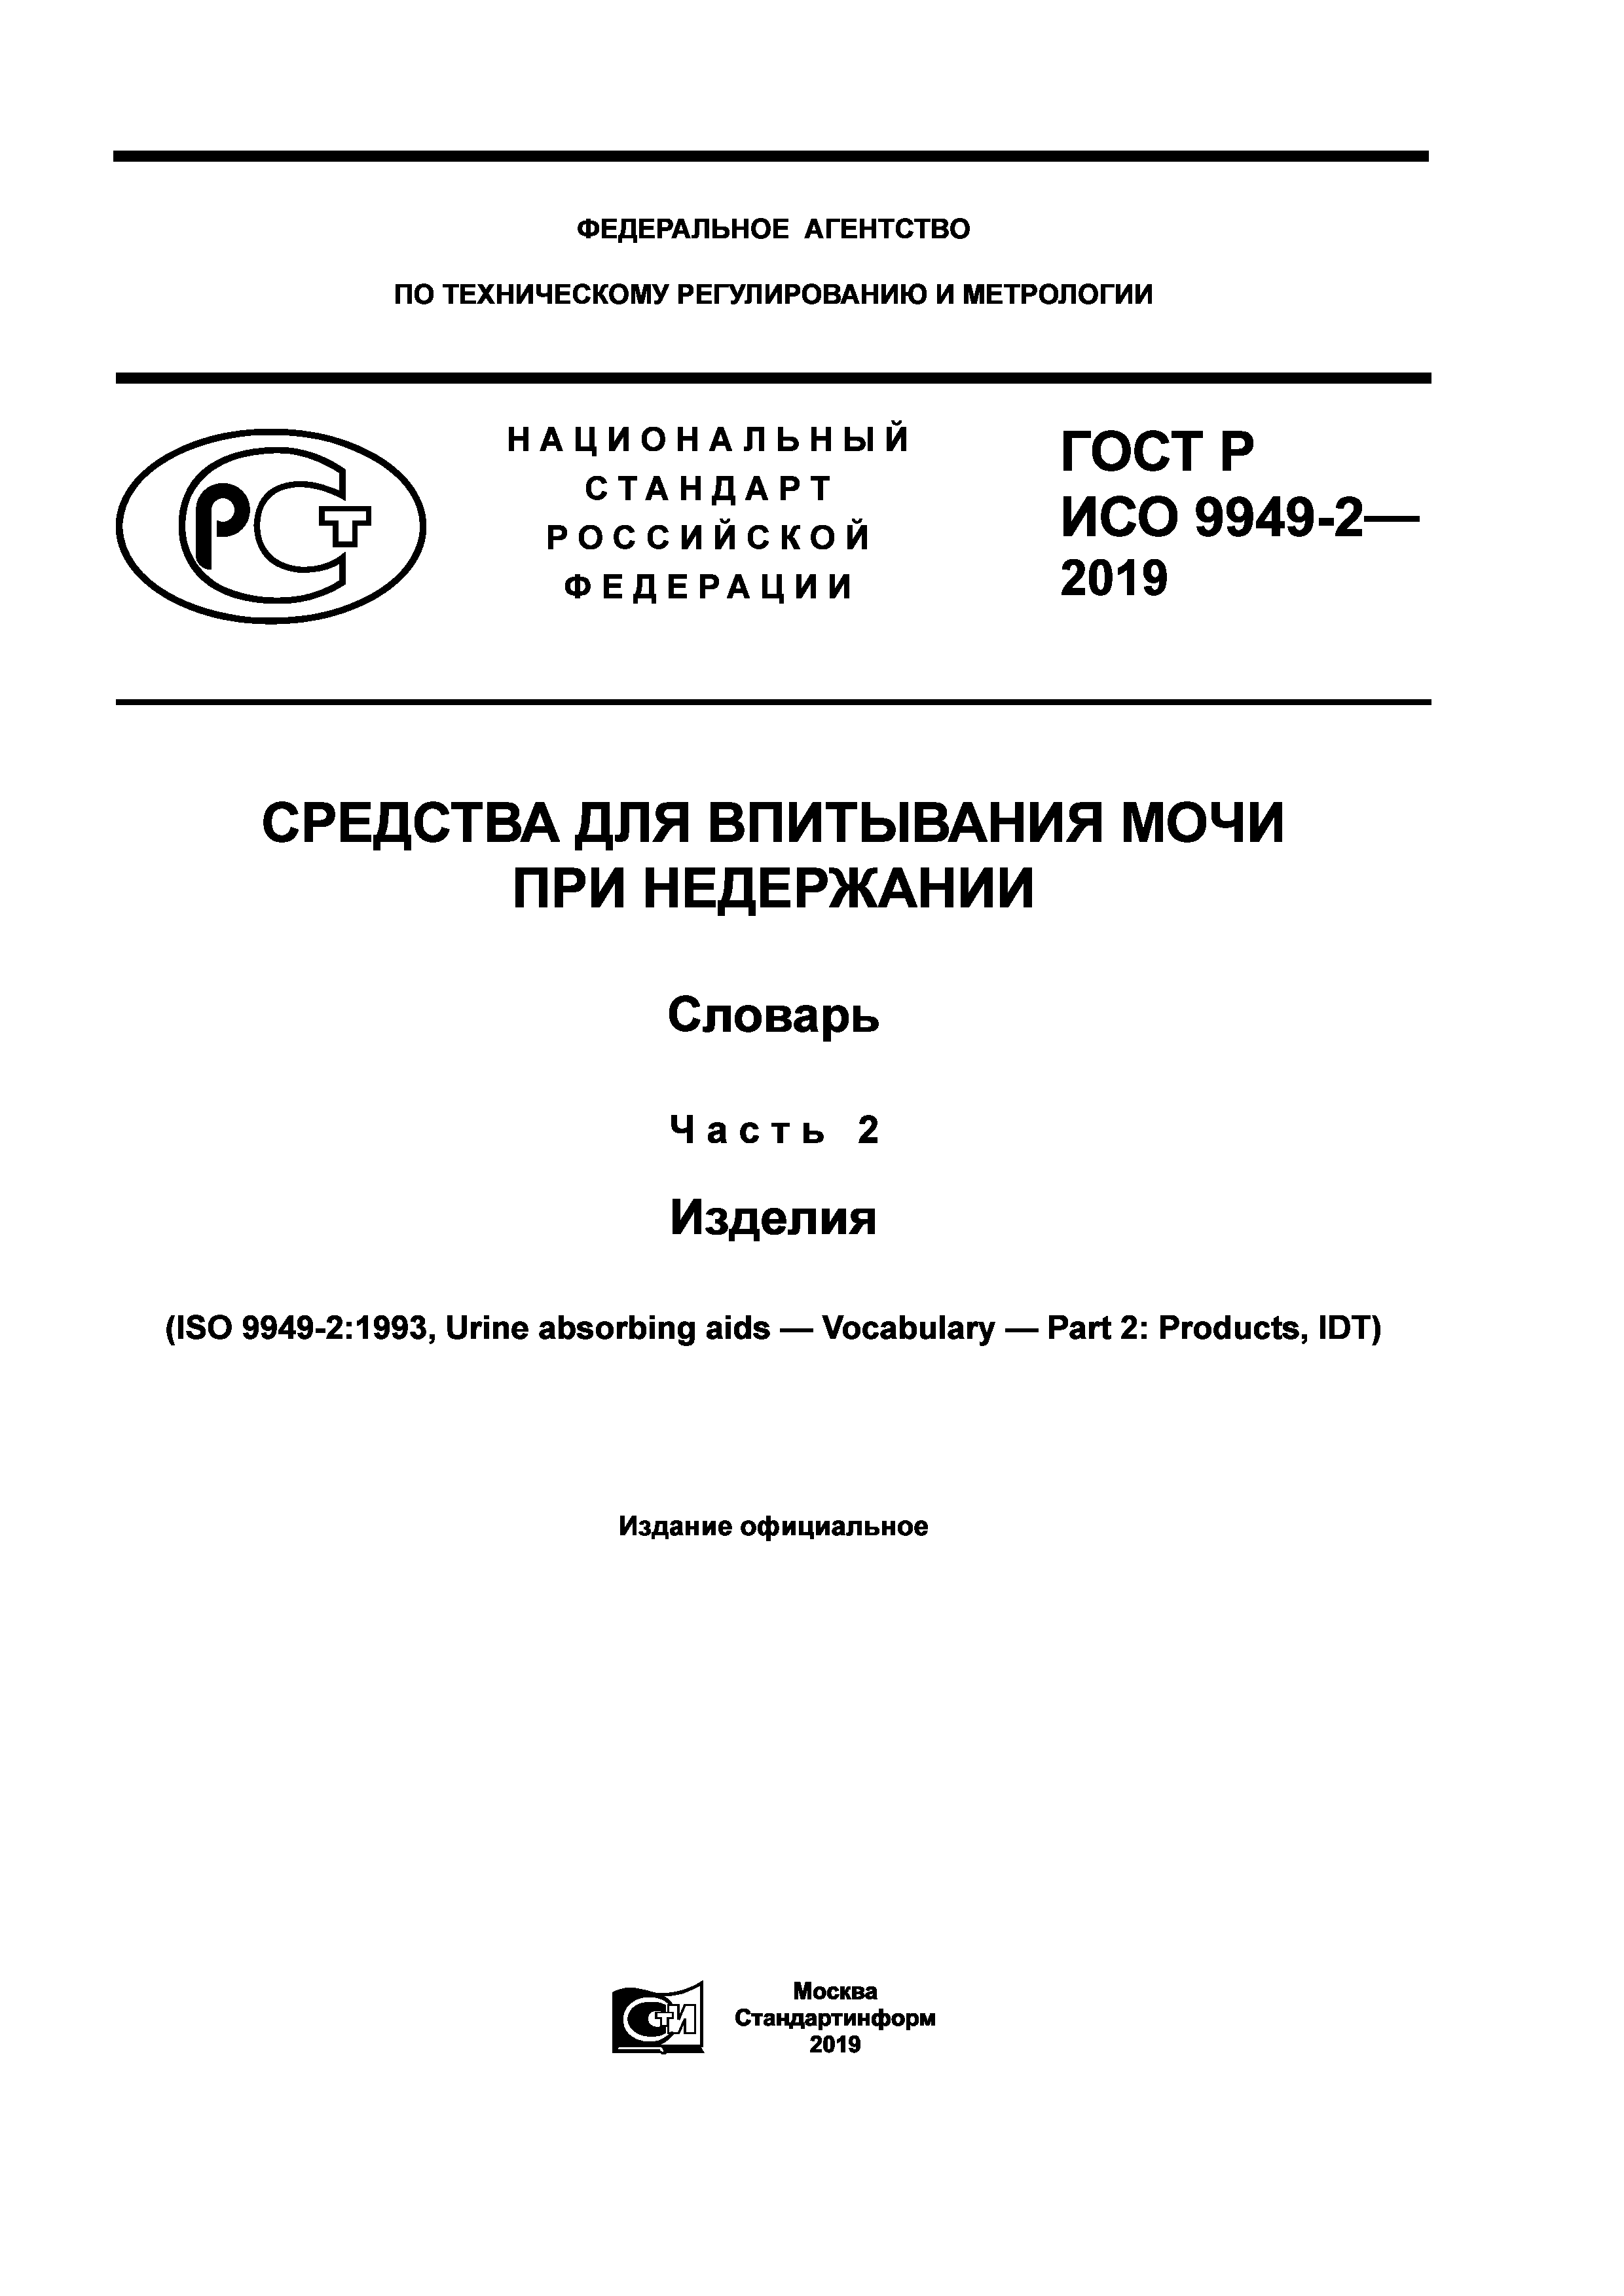 ГОСТ Р ИСО 9949-2-2019